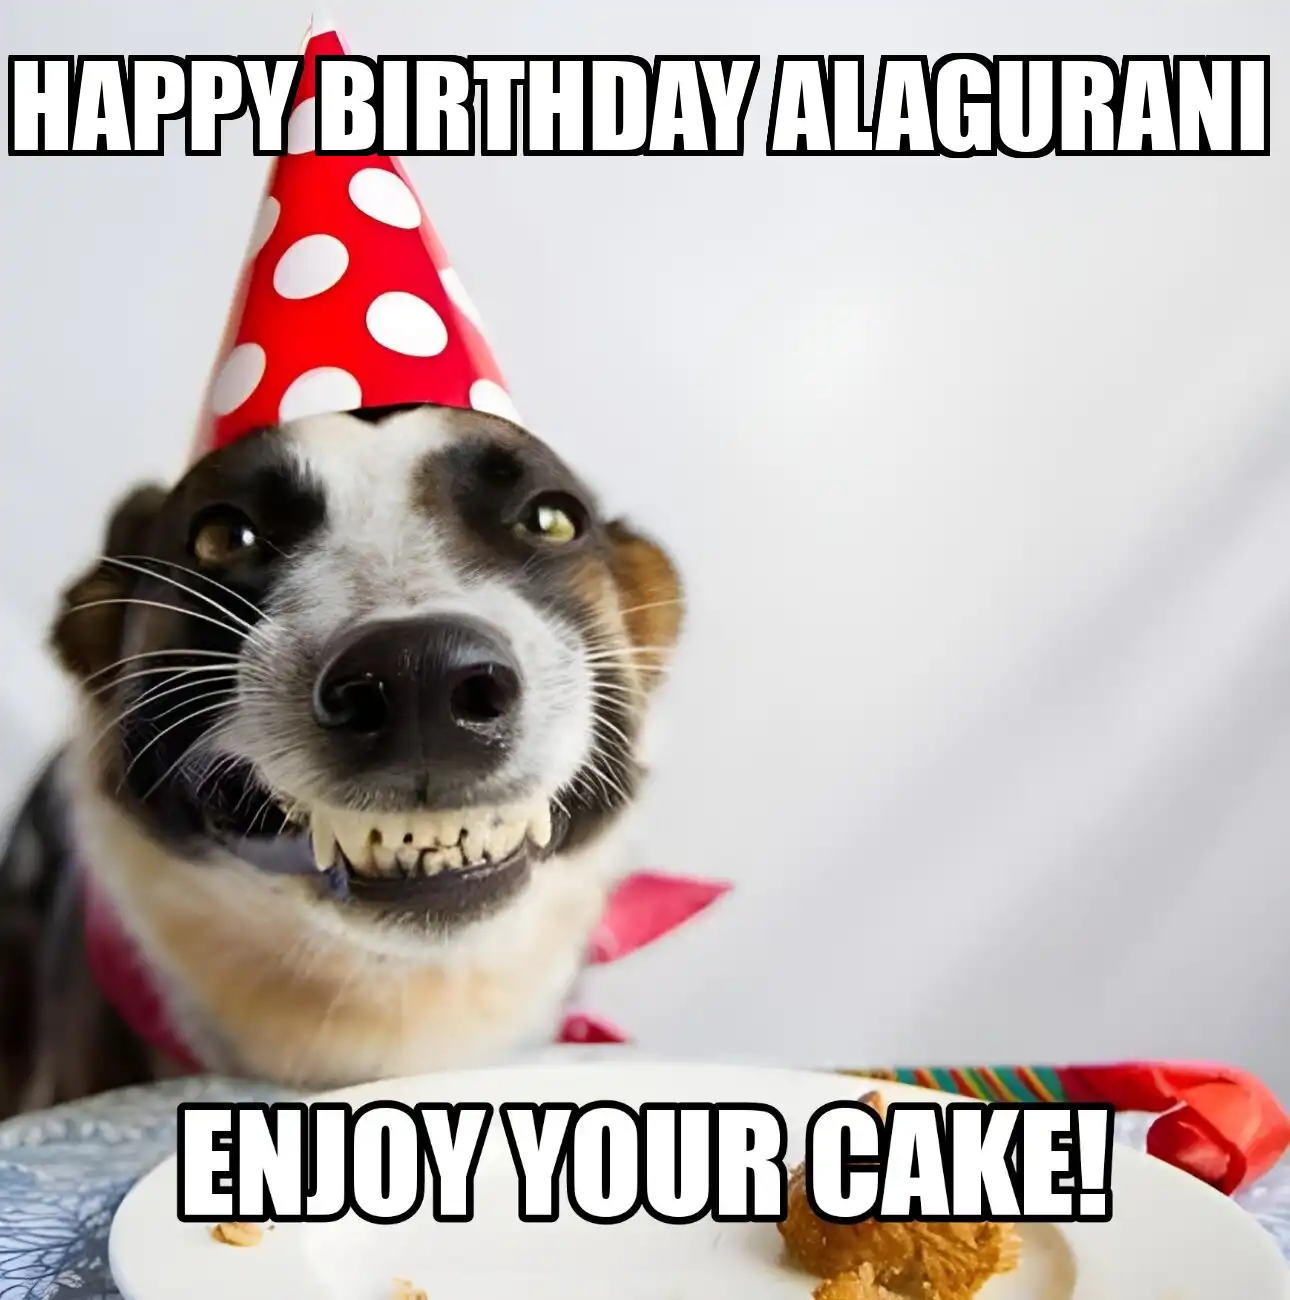 Happy Birthday Alagurani Enjoy Your Cake Dog Meme